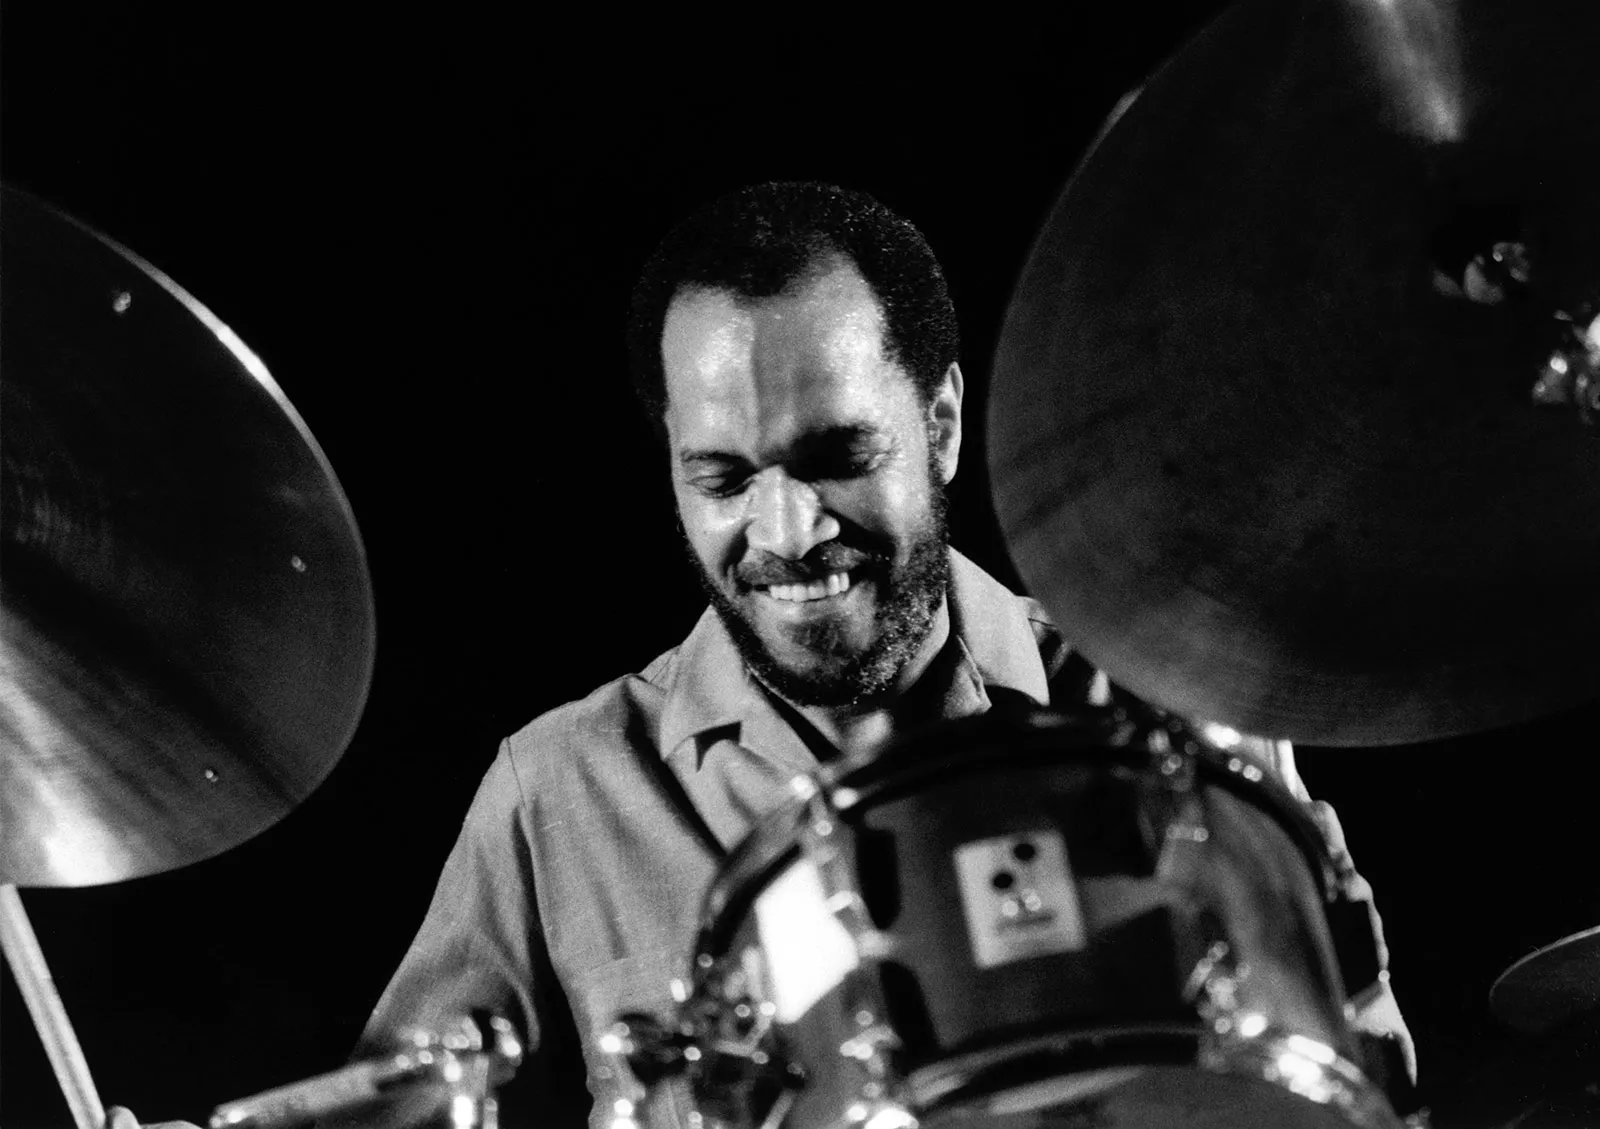 Billy-Higgins-jazz-drummer-circa-late-1980s